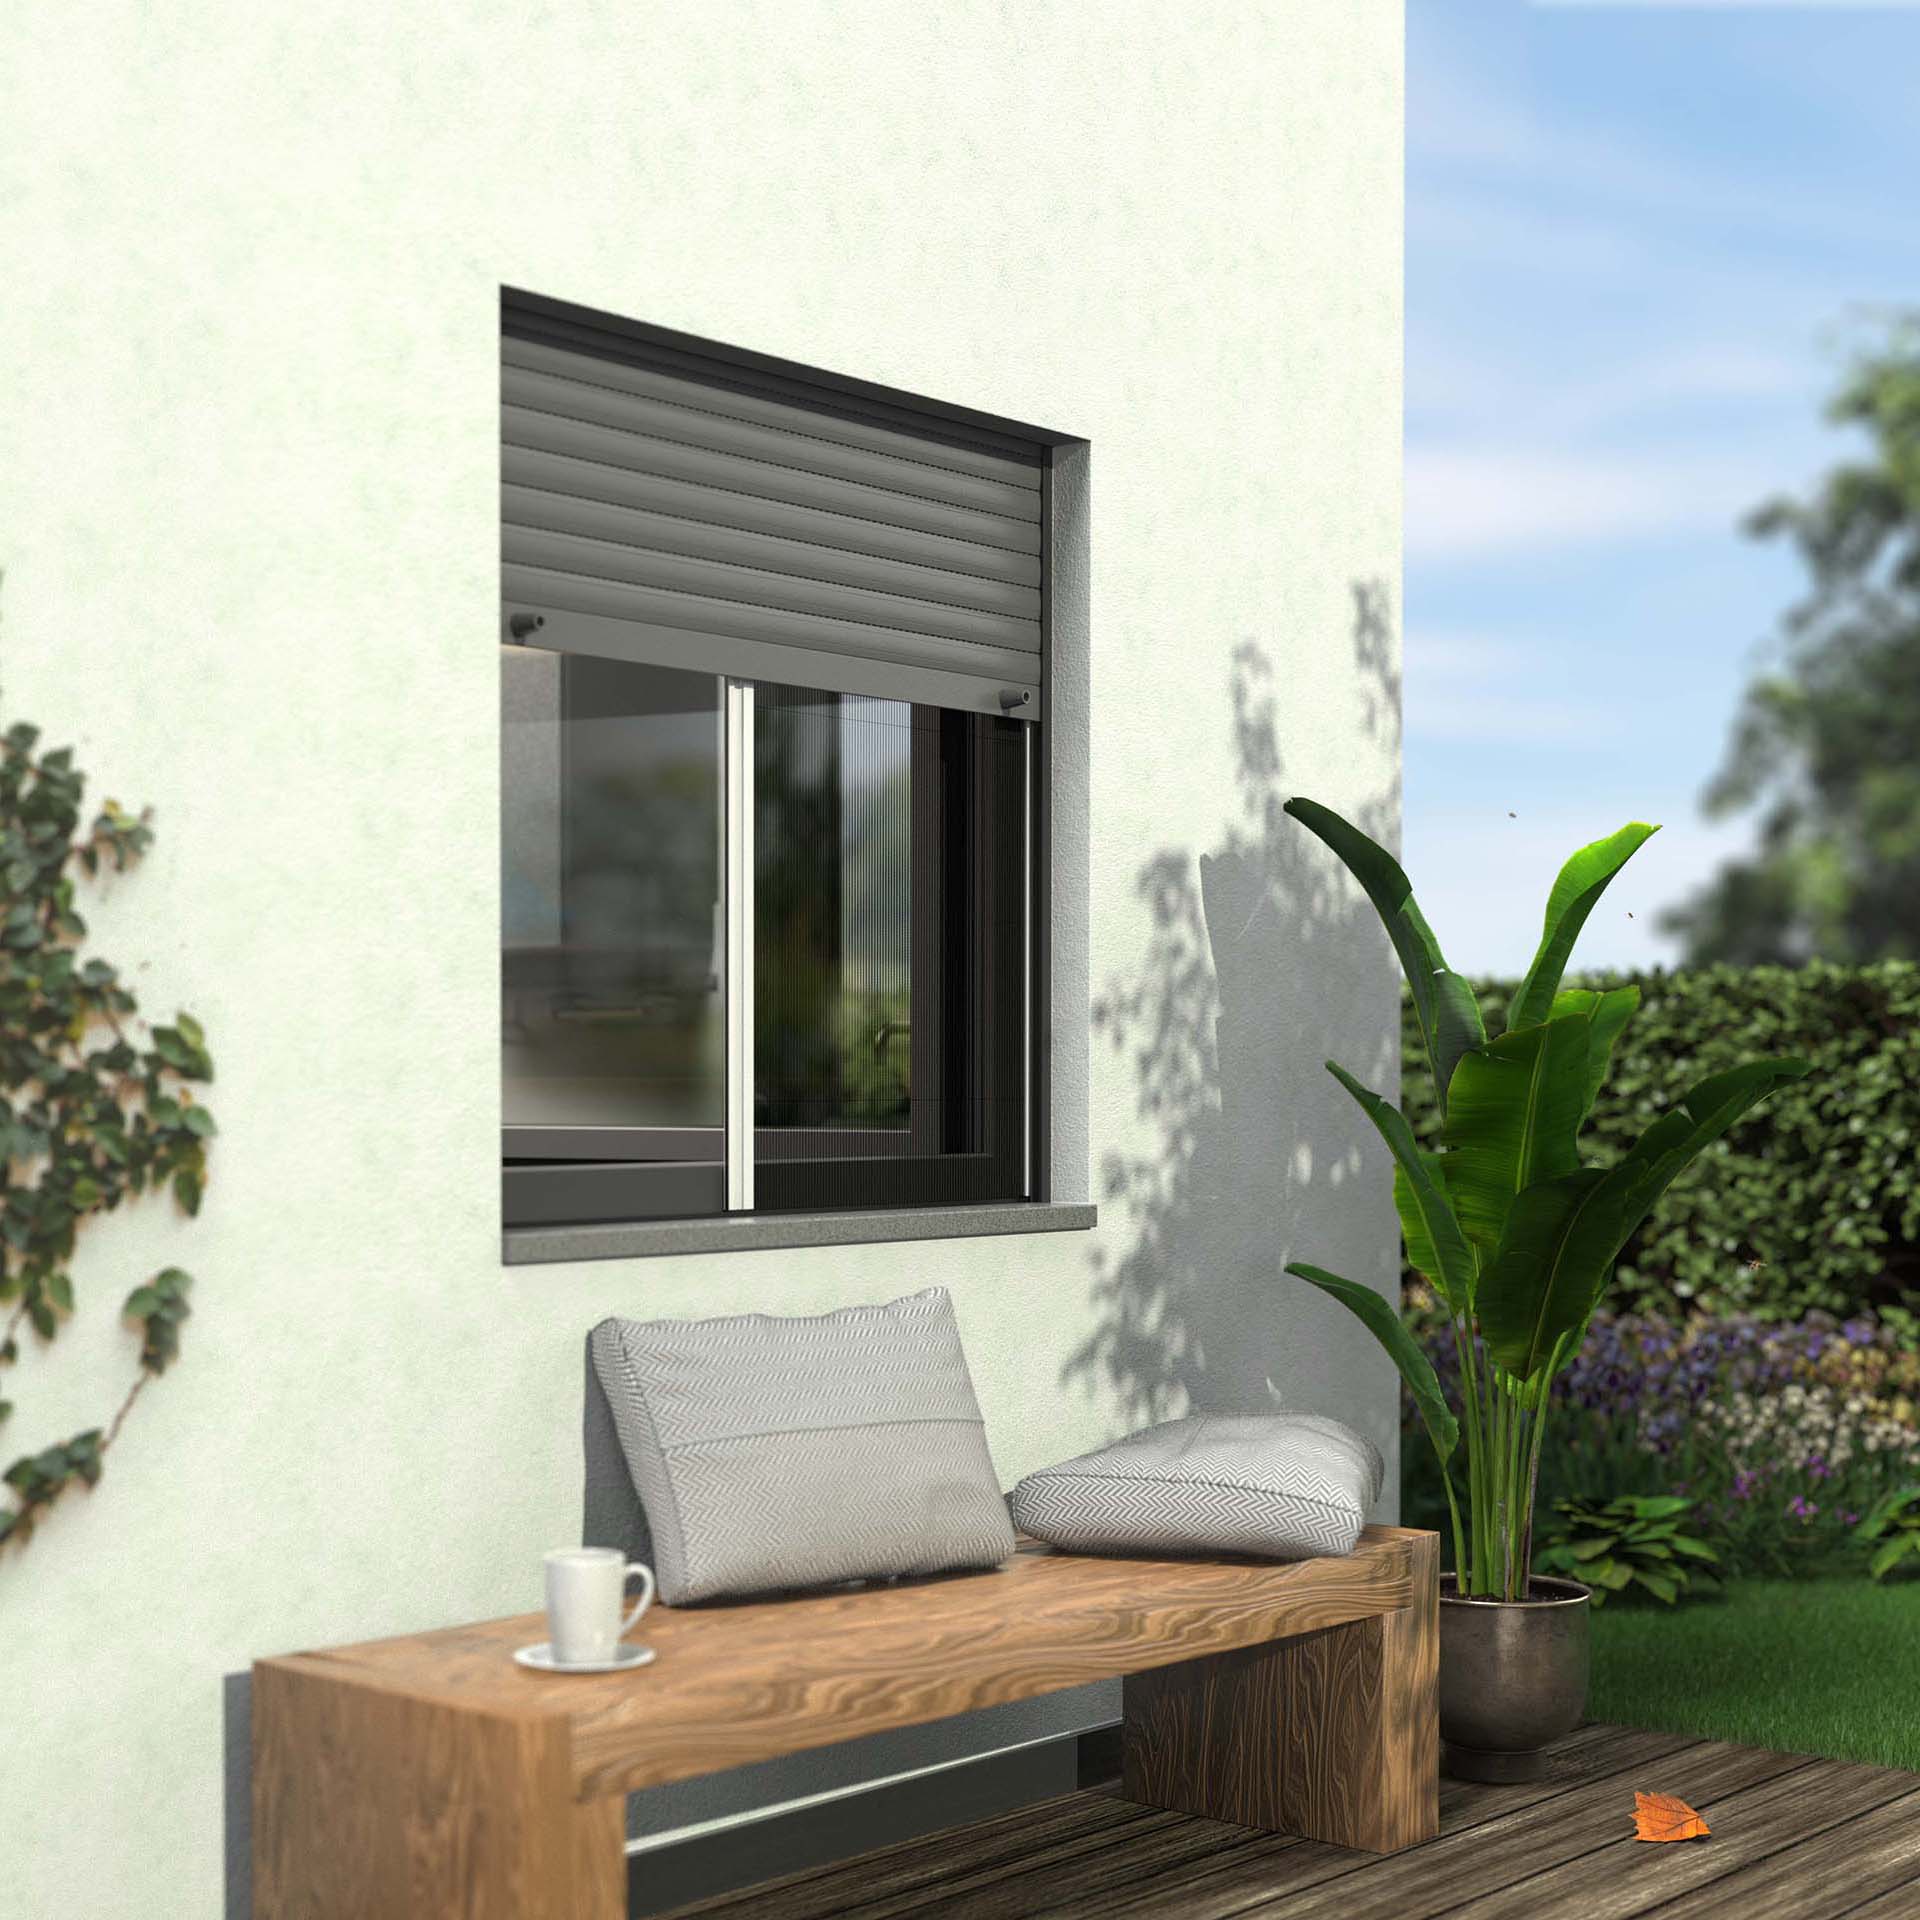 Insektenschutz-Plissee, ideal zwischen Fenster und Rollladen | Micro13